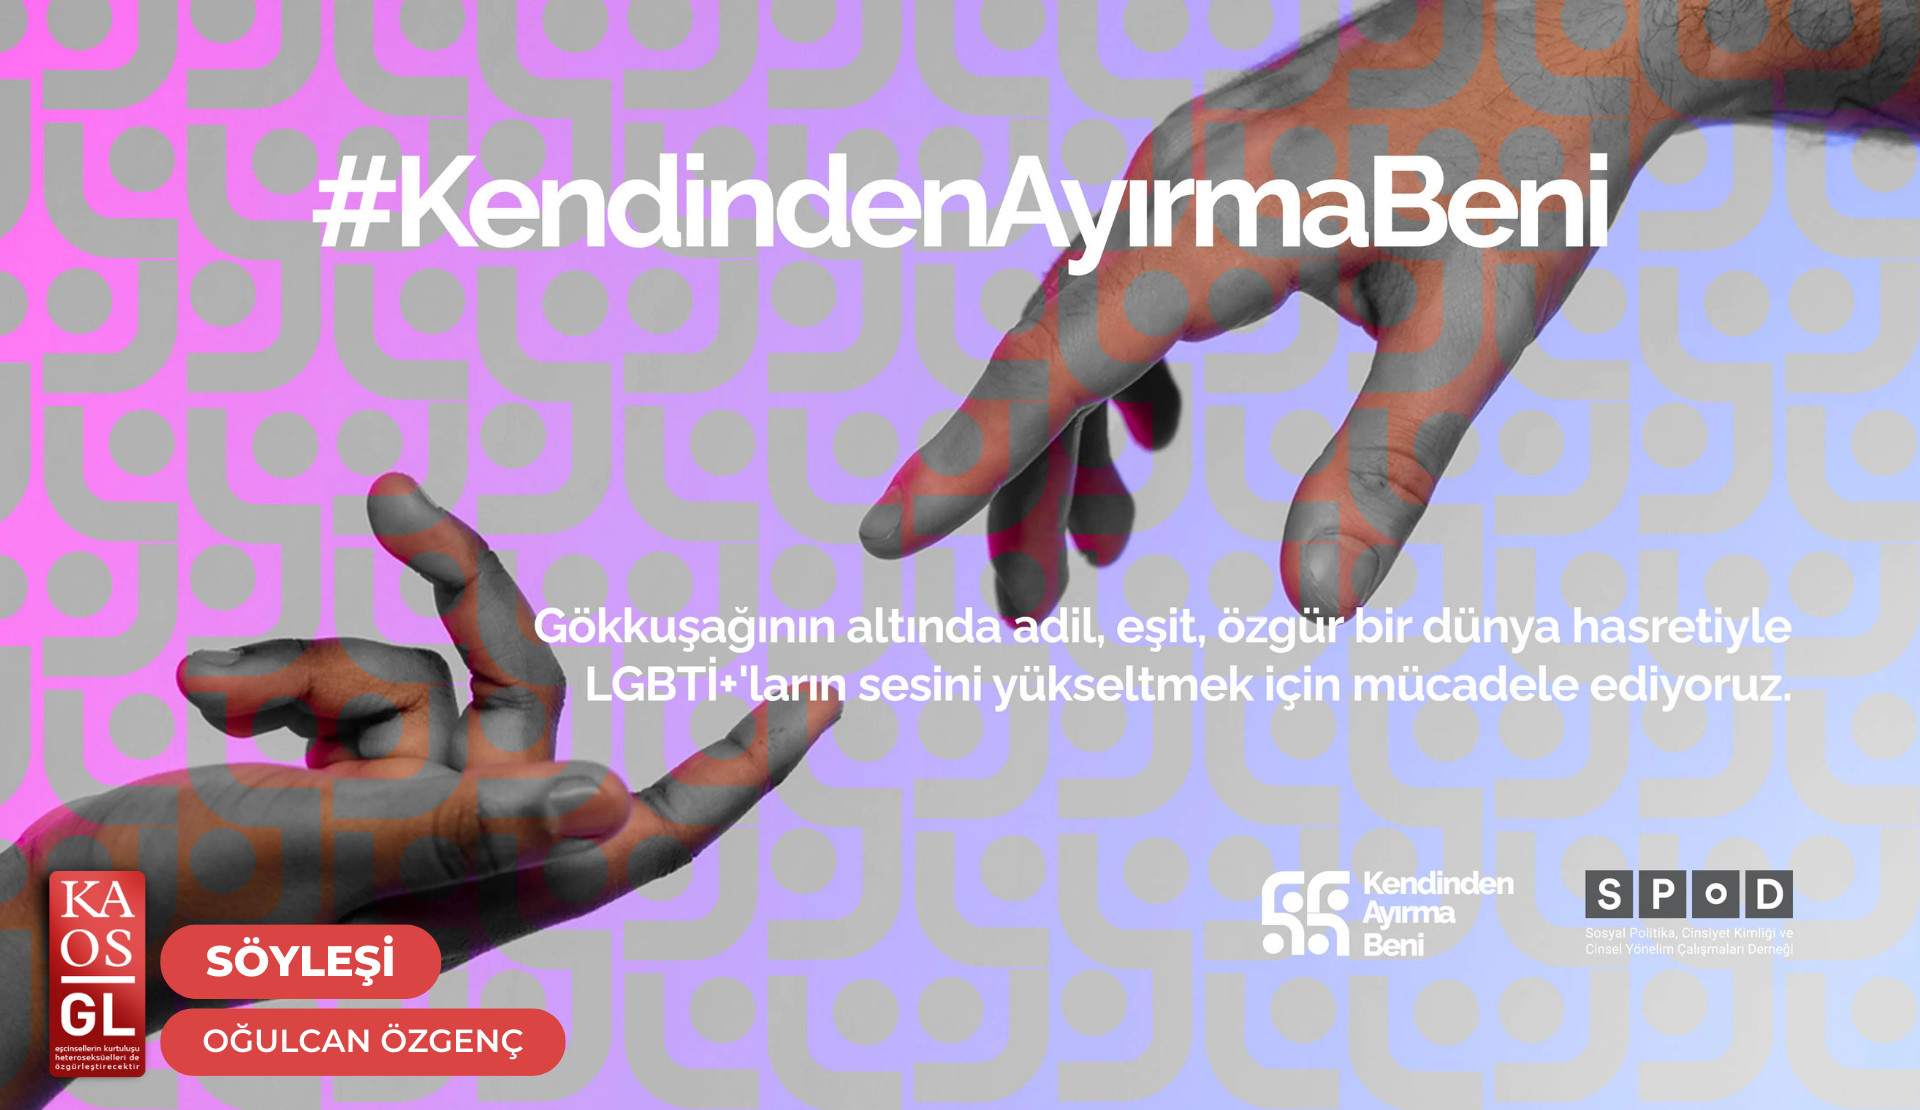 “SPoD’un kurulduğu günden bu yana LGBTİ+’ların hayatlarına nasıl dokunduğunu anlatacağız” | Kaos GL - LGBTİ+ Haber Portalı Haber